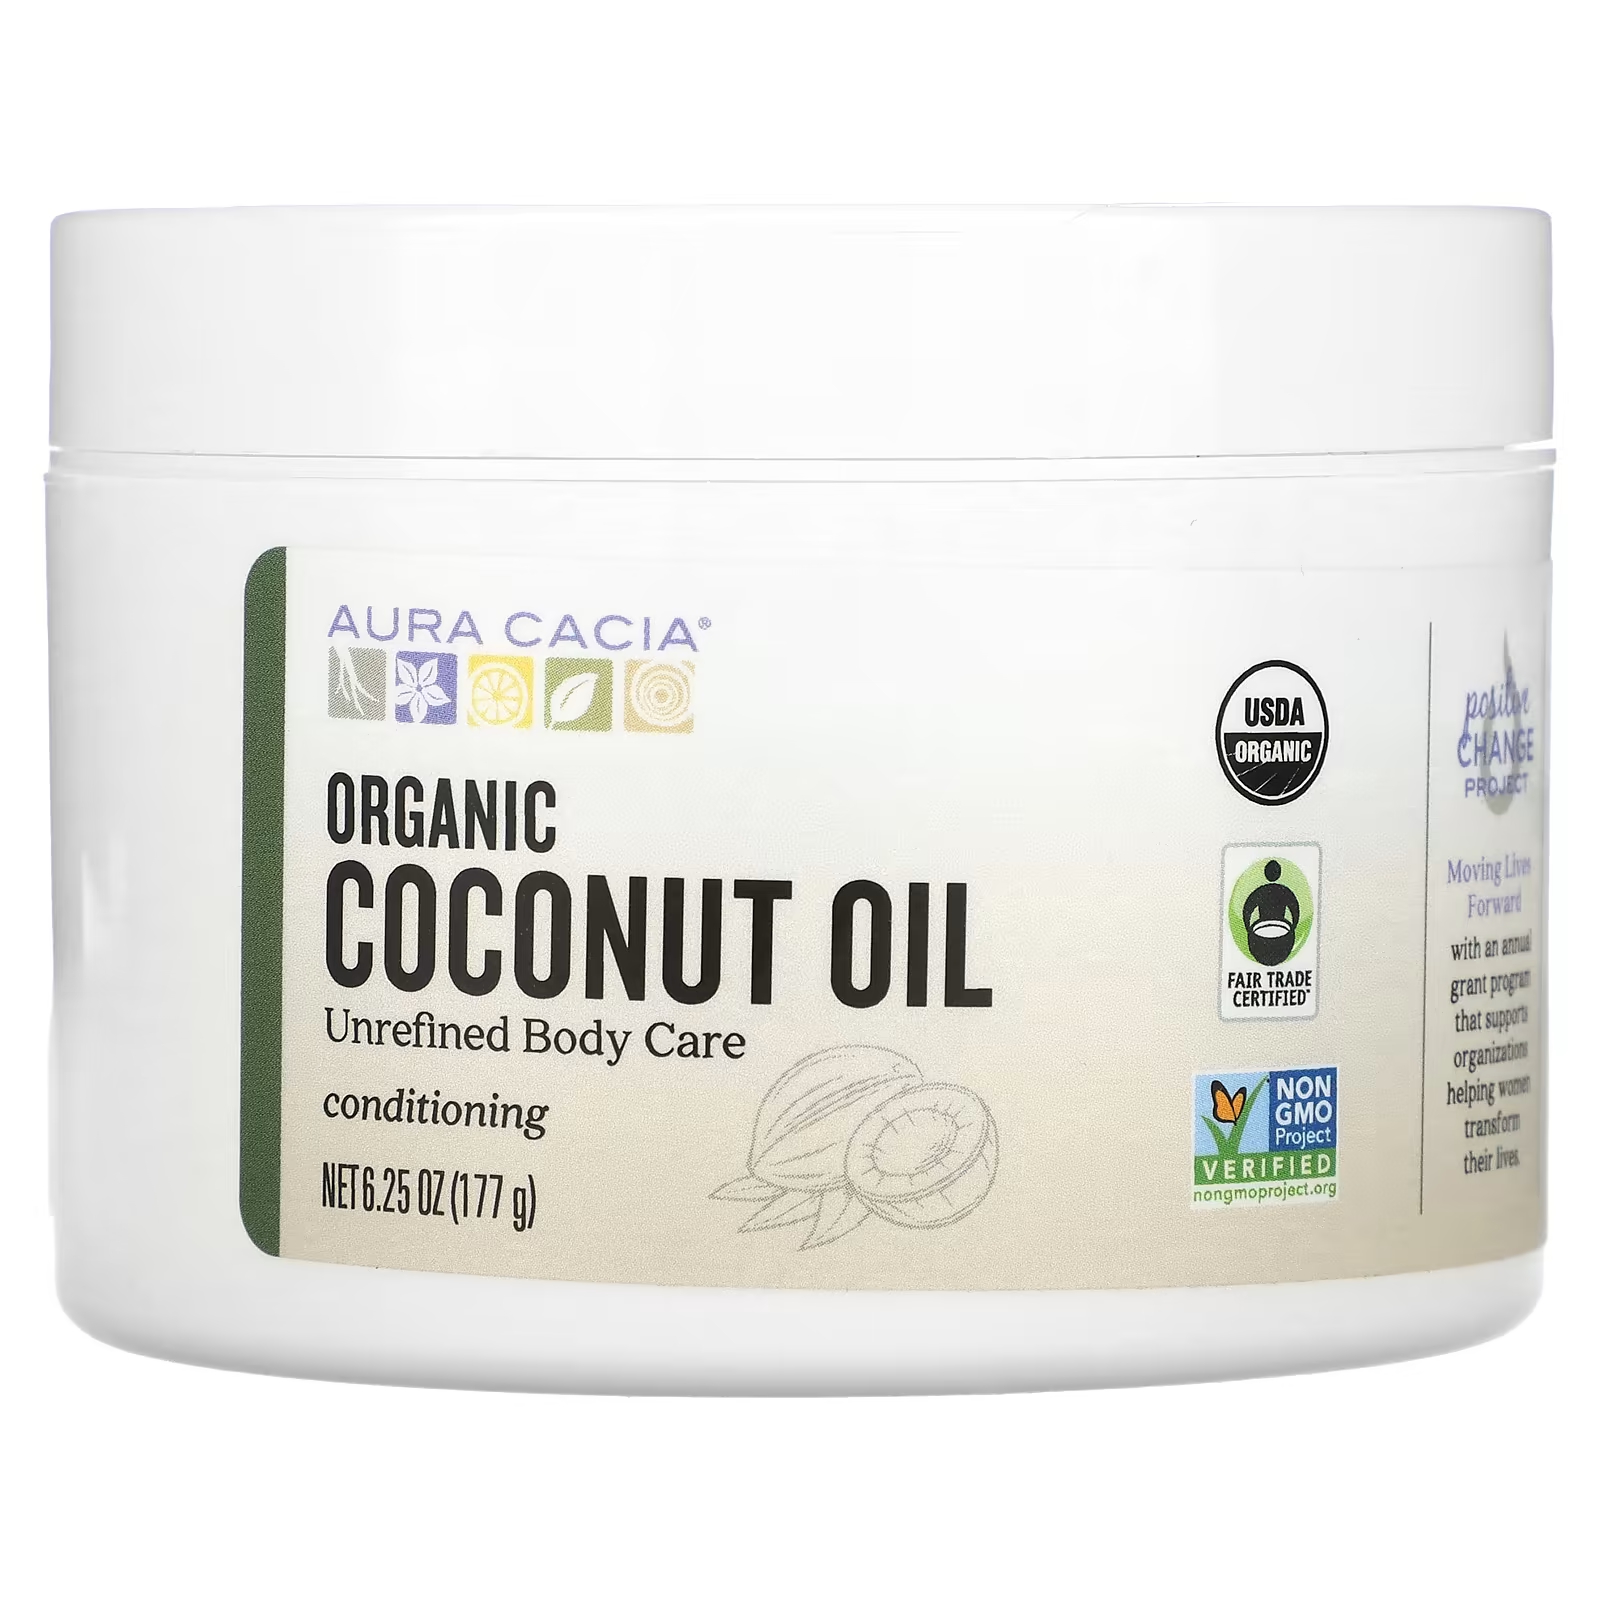 Органическое кокосовое масло Aura Cacia aura cacia органическое уходовое масло для кожи омолаживающее аргана 1 ж унц 30 мл